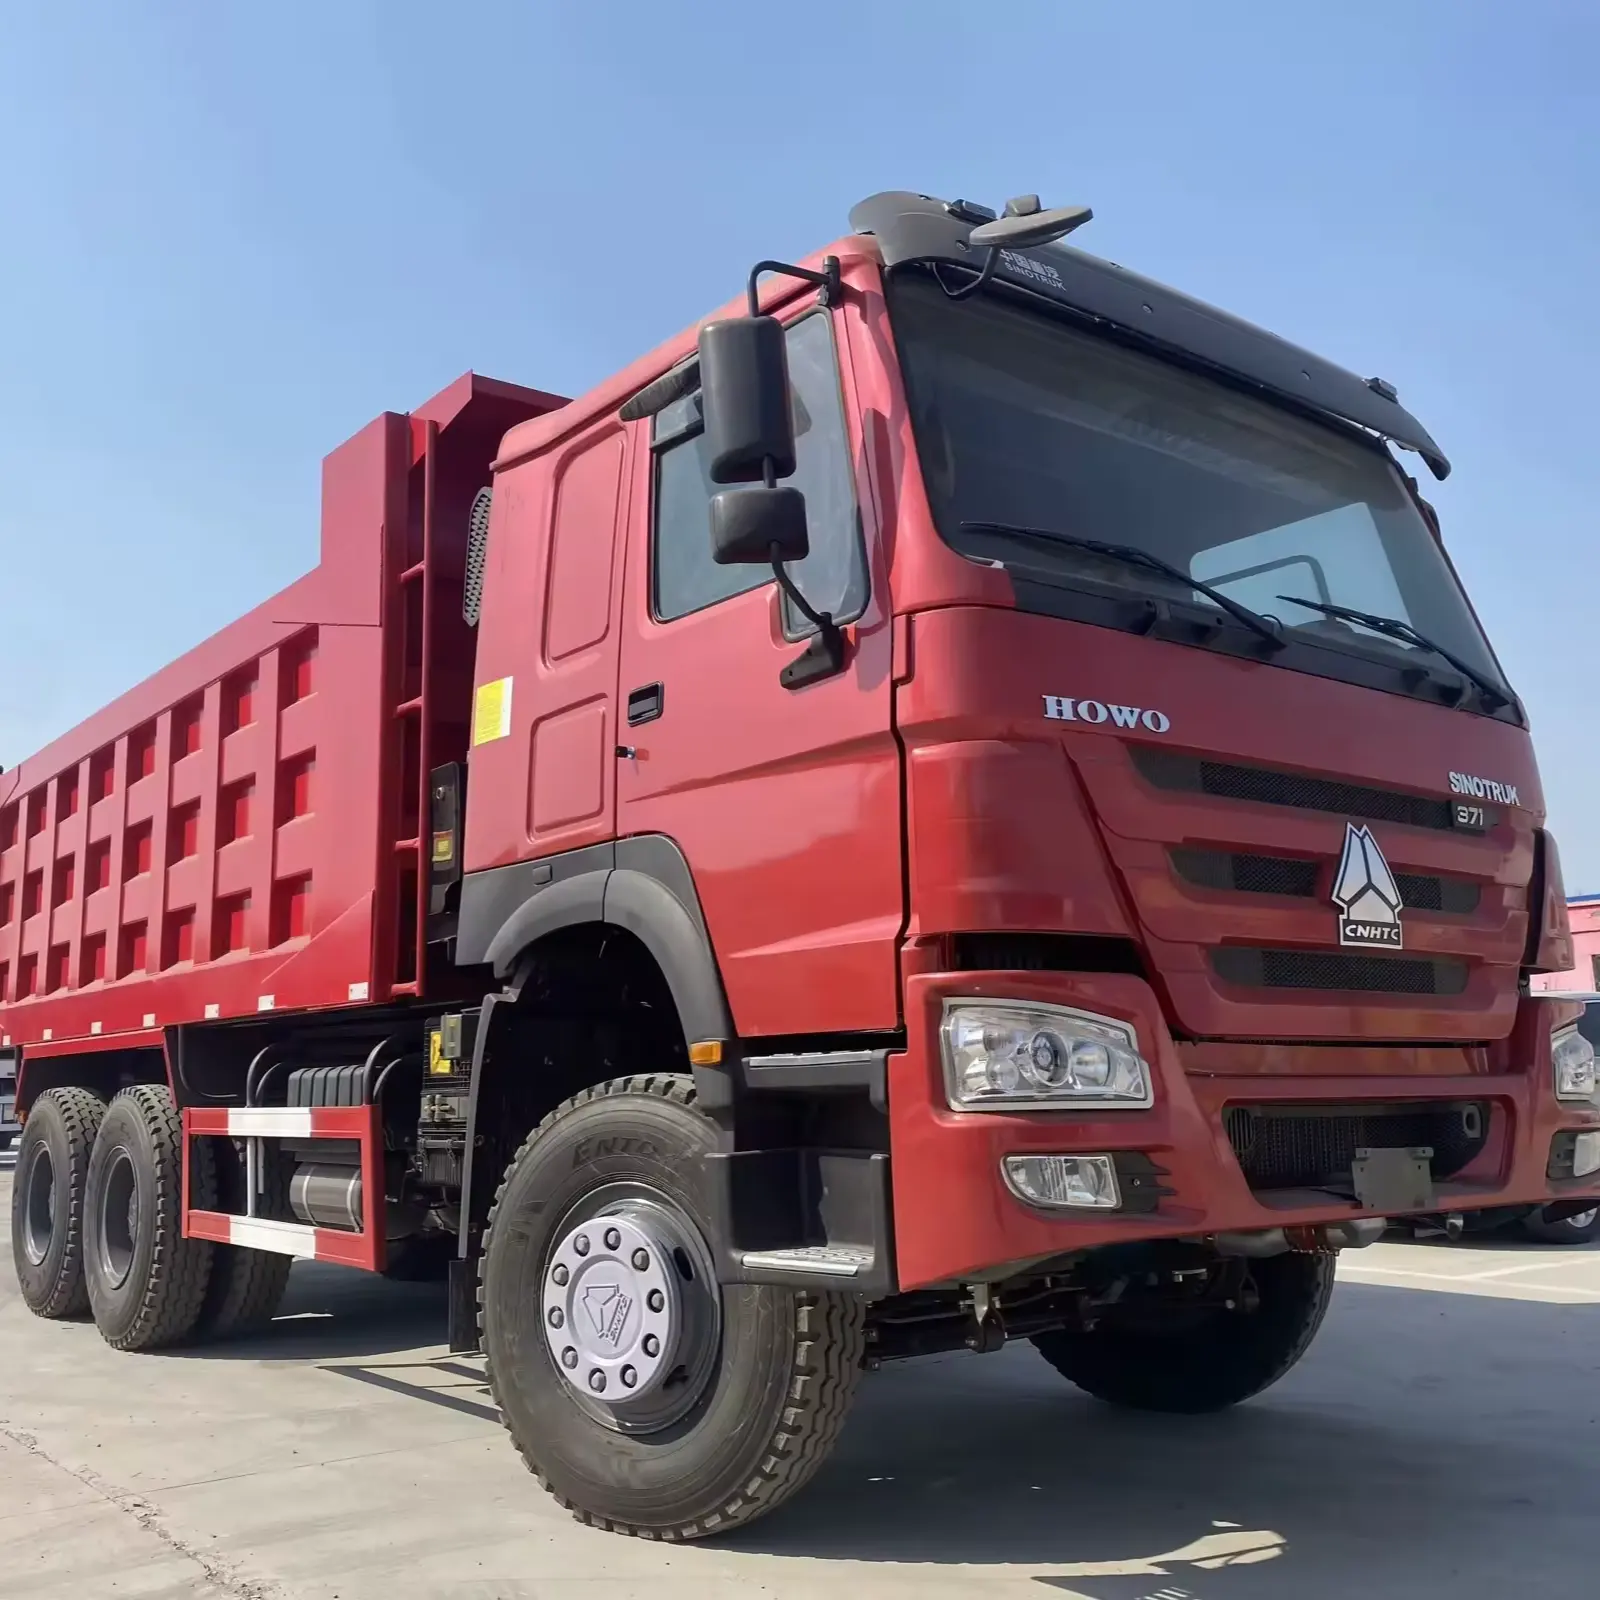 سعر Sinotruk شاحنة هوو جديدة ومستعملة من شركة Sino في إثيوبيا 6x4 بعجلات 10 شاحنة بقلاب شاحنة تفريغ وتعدين للبيع